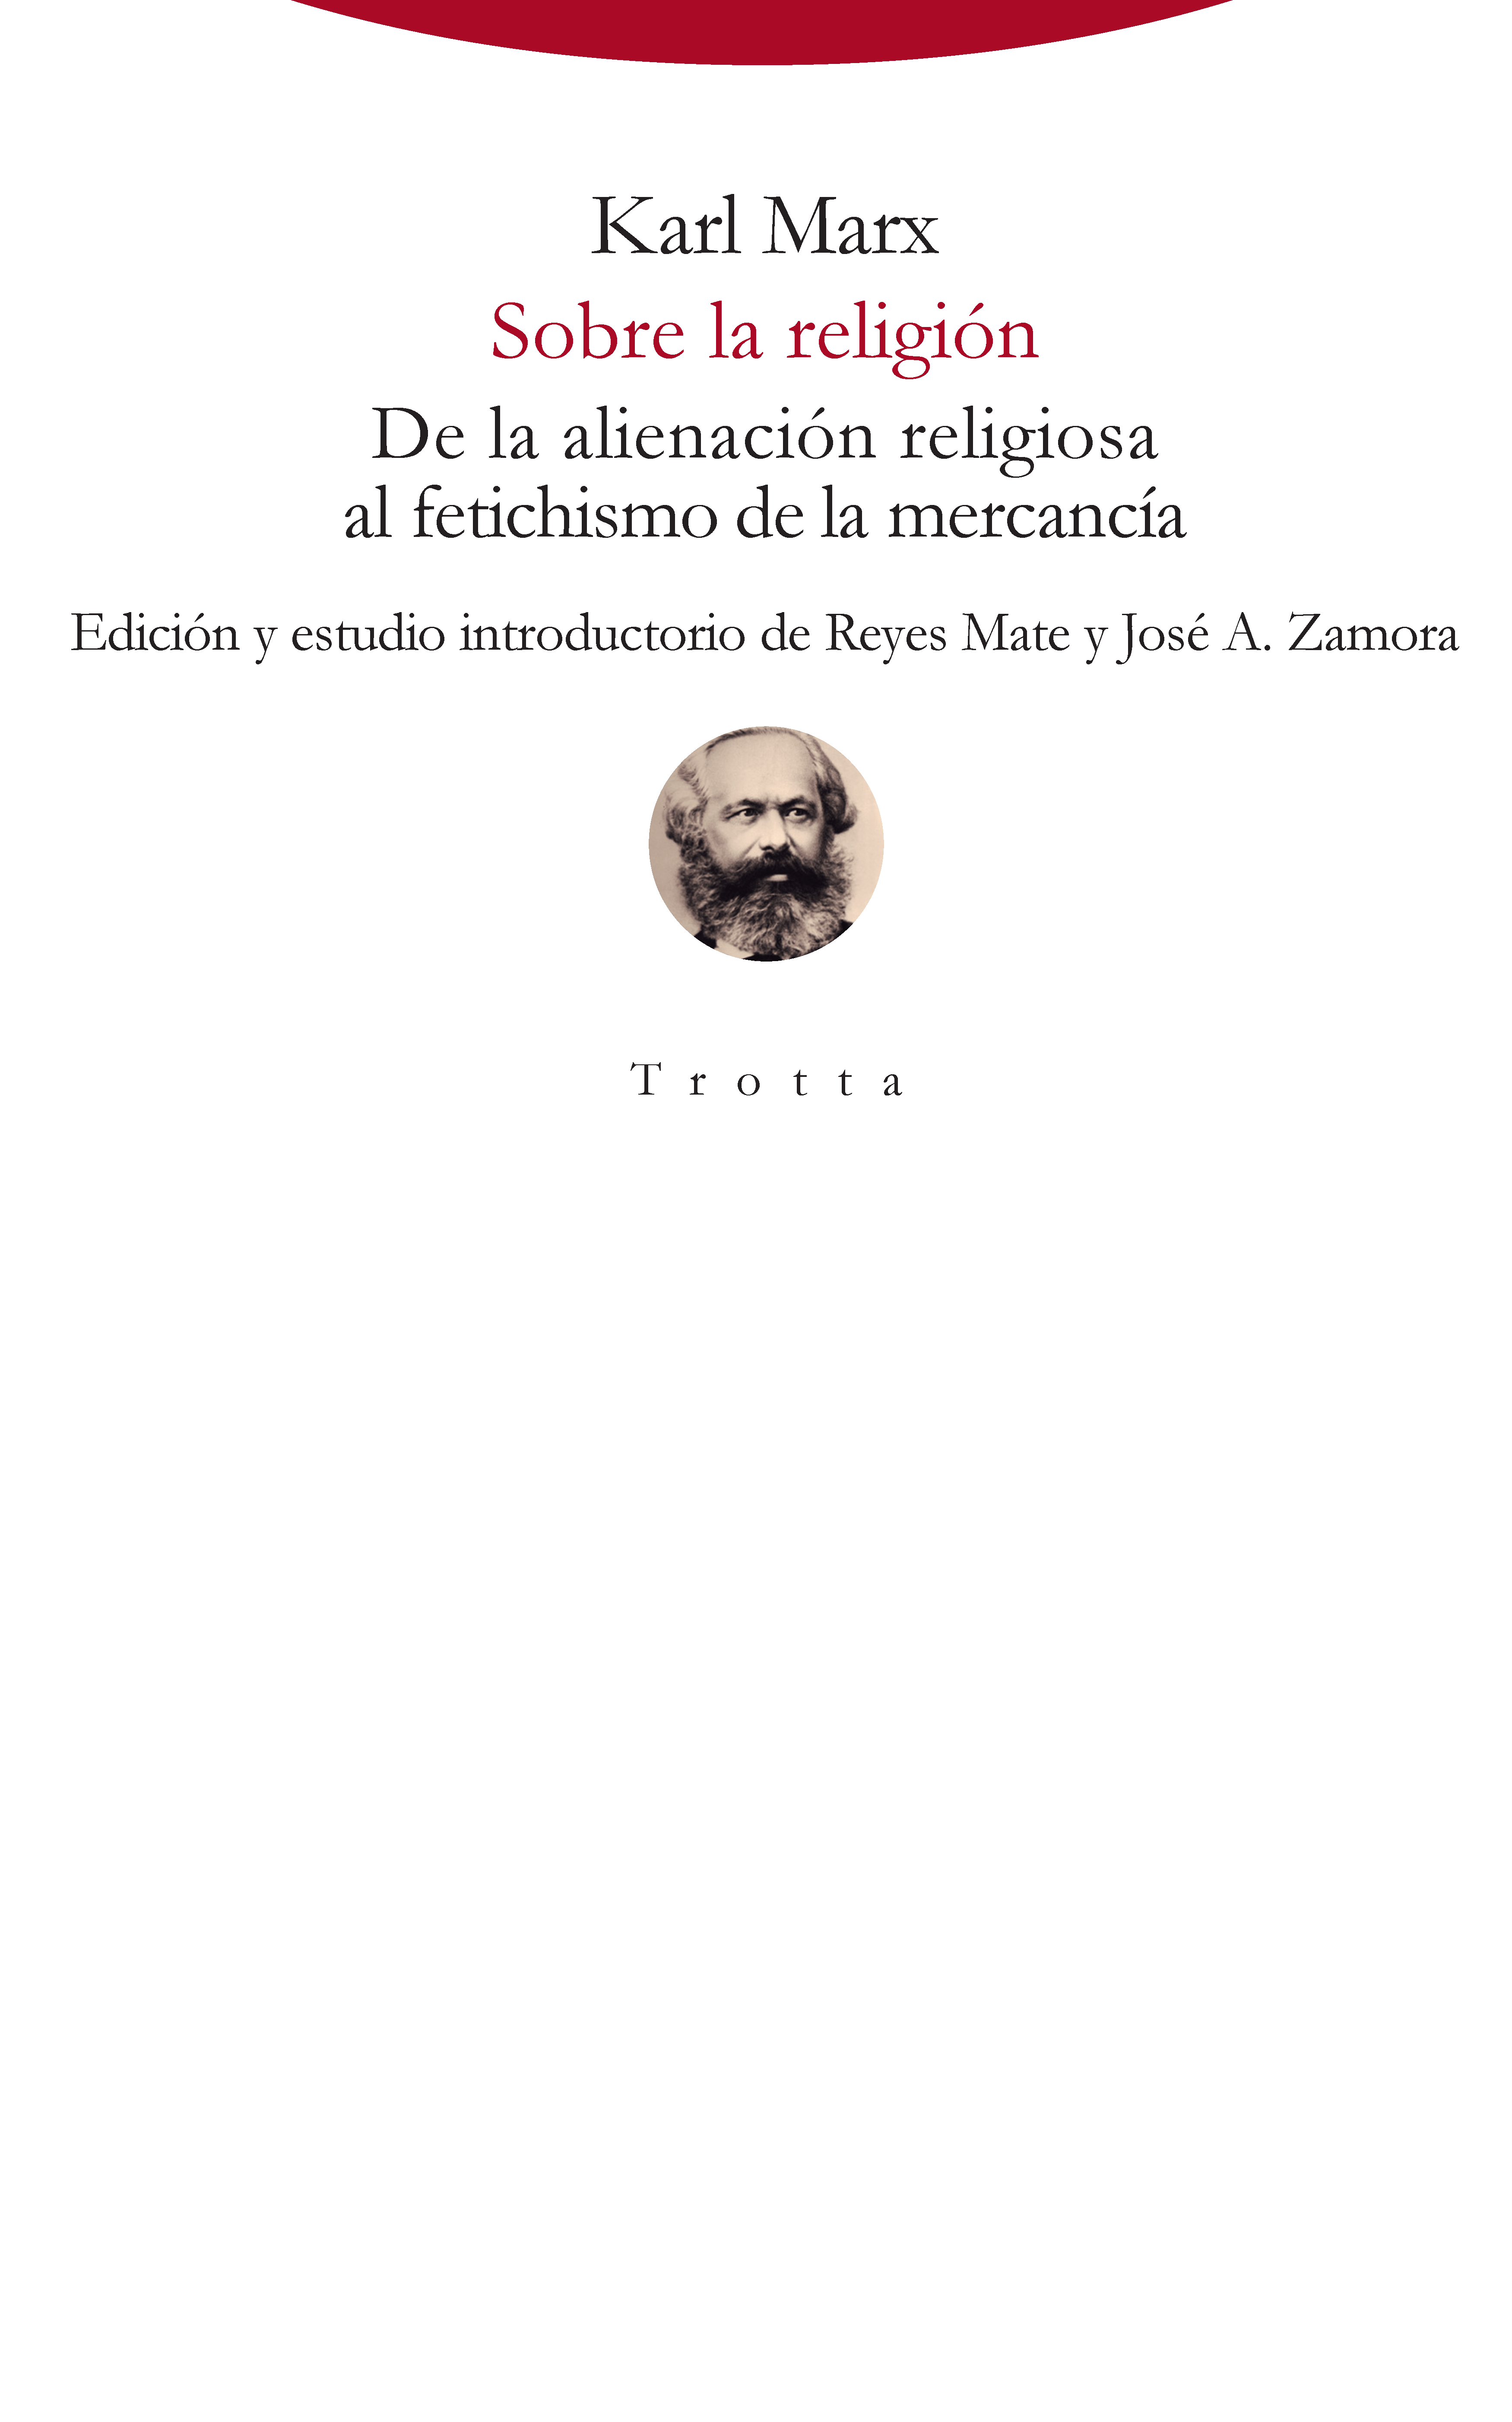 PRESENTACIÓN | Sobre la religión, de Karl Marx, con Reyes Mate, José Antonio Zamora, Rafael Díaz Salazar y César Rendueles